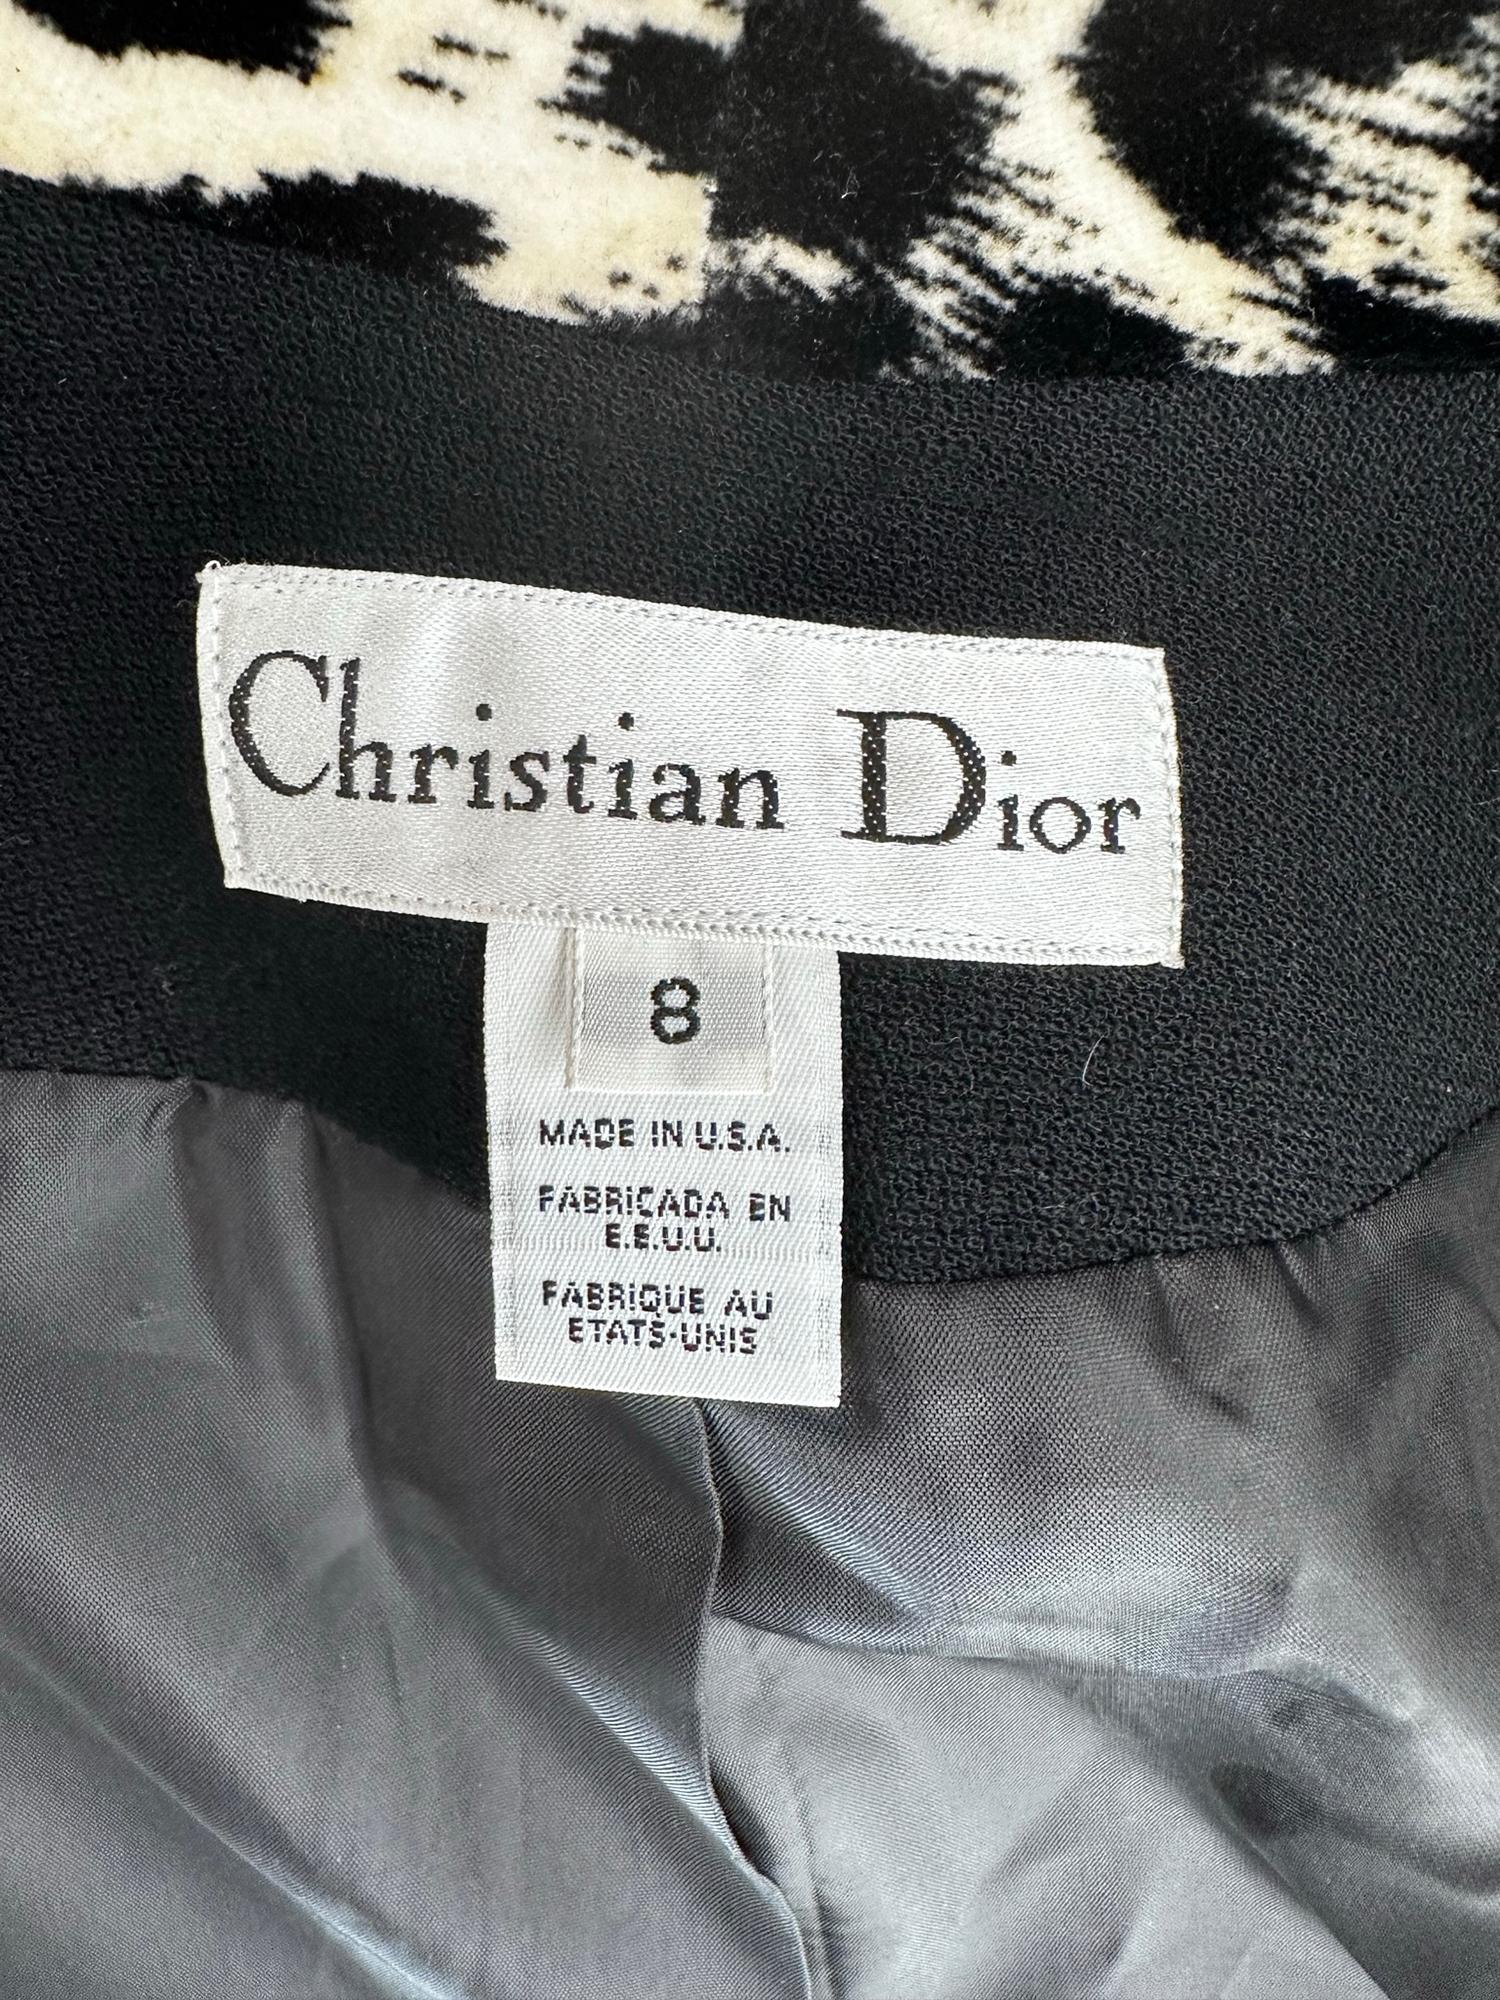 Christian Dior Black Princess Seam Tuxedo Jacket Black White Velvet Lapels 1990s For Sale 9